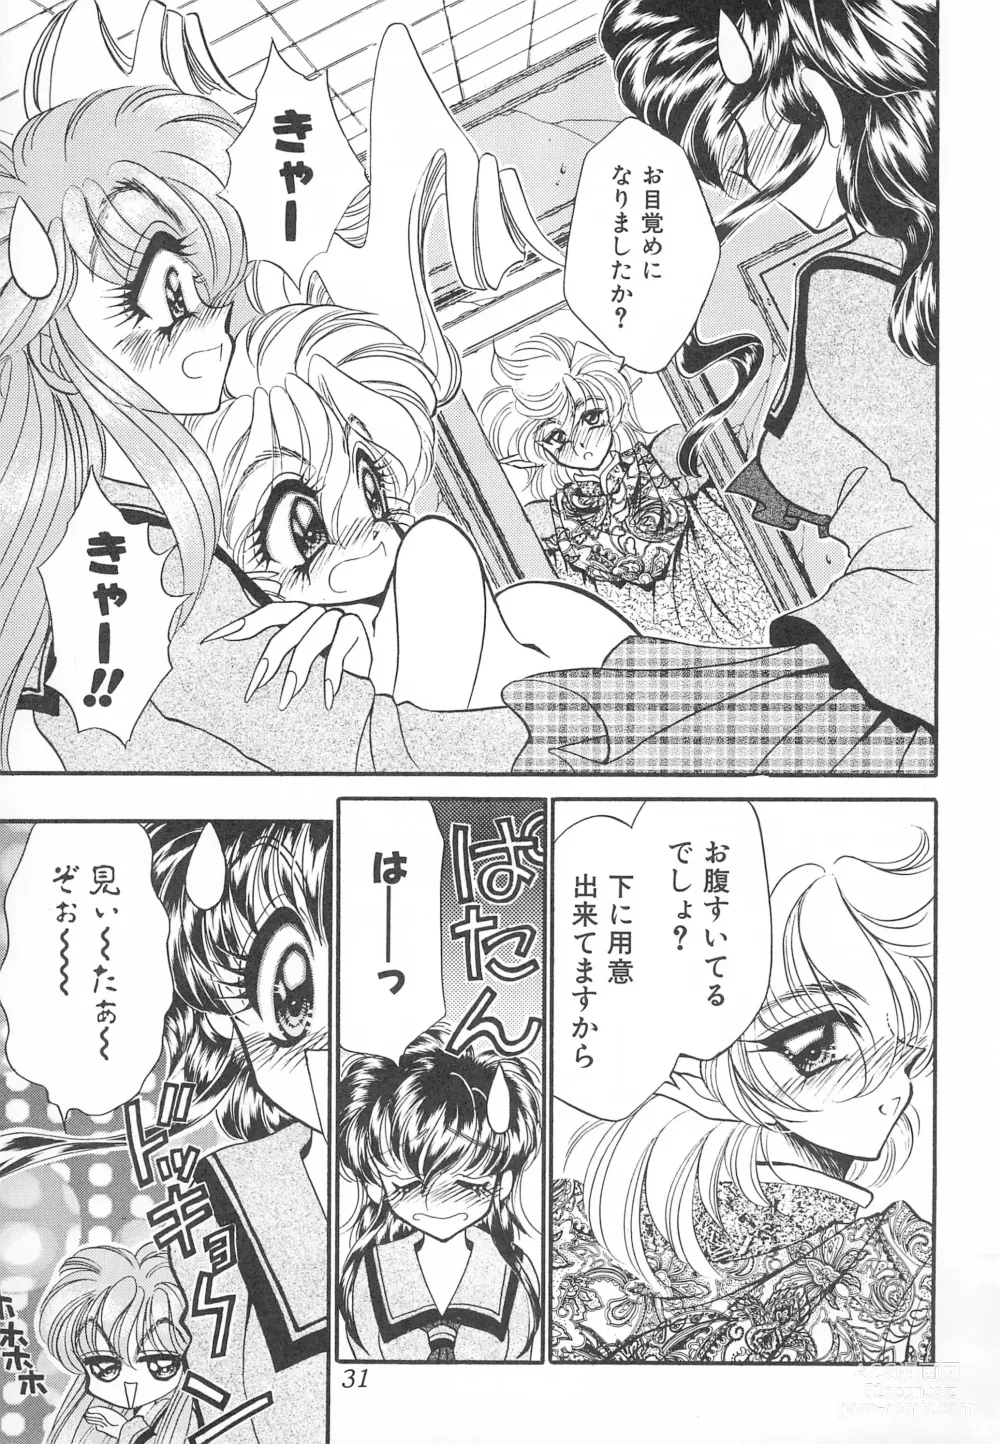 Page 31 of doujinshi MAX 6